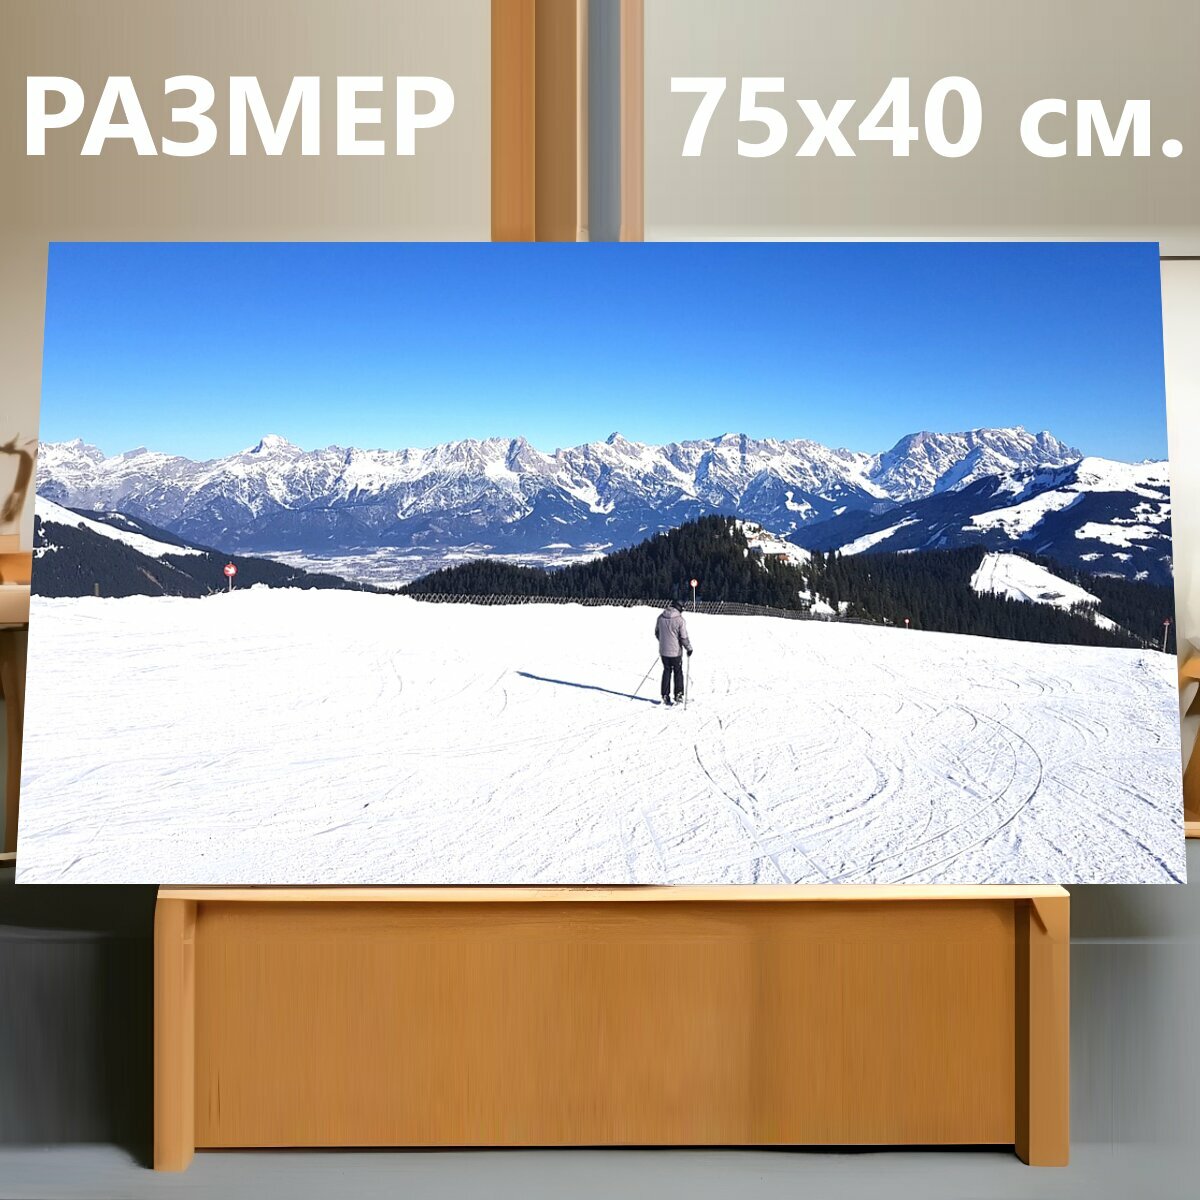 Картина на холсте "Кататься на лыжах, снег, горные лыжи" на подрамнике 75х40 см. для интерьера